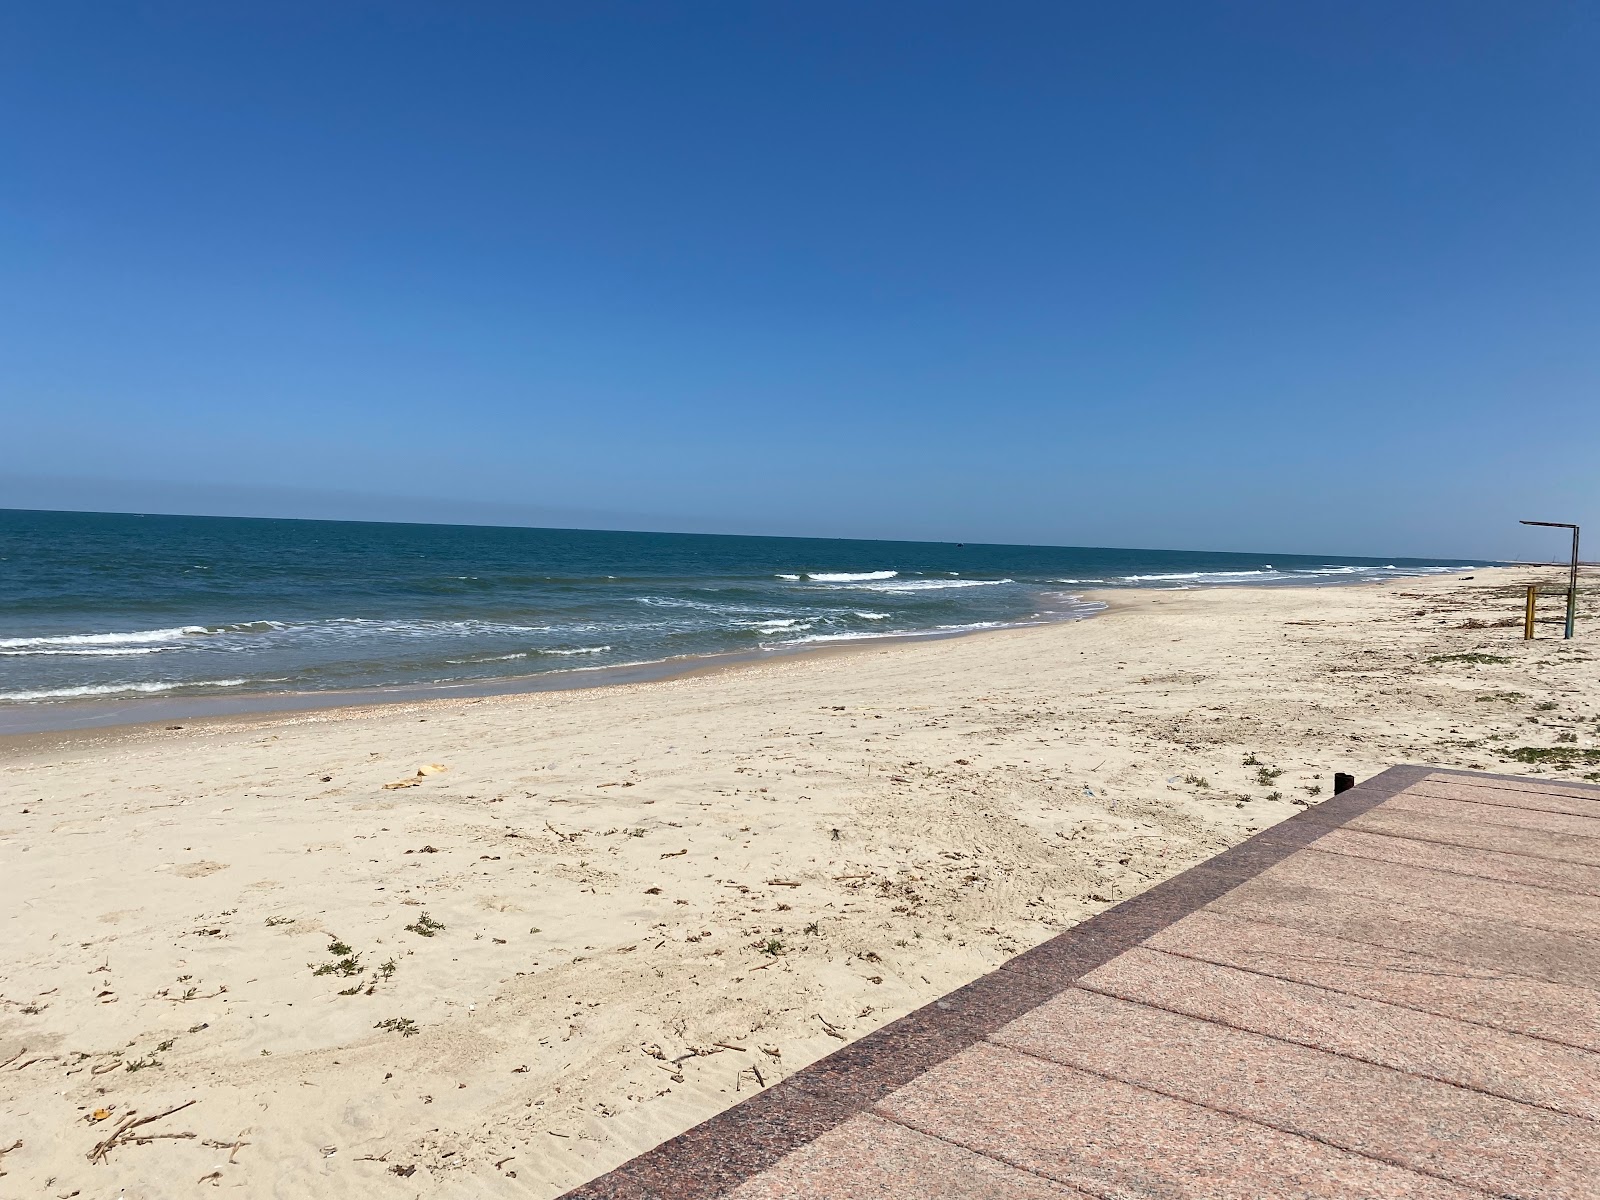 Shokry Al Kotaly Beach'in fotoğrafı parlak kum yüzey ile